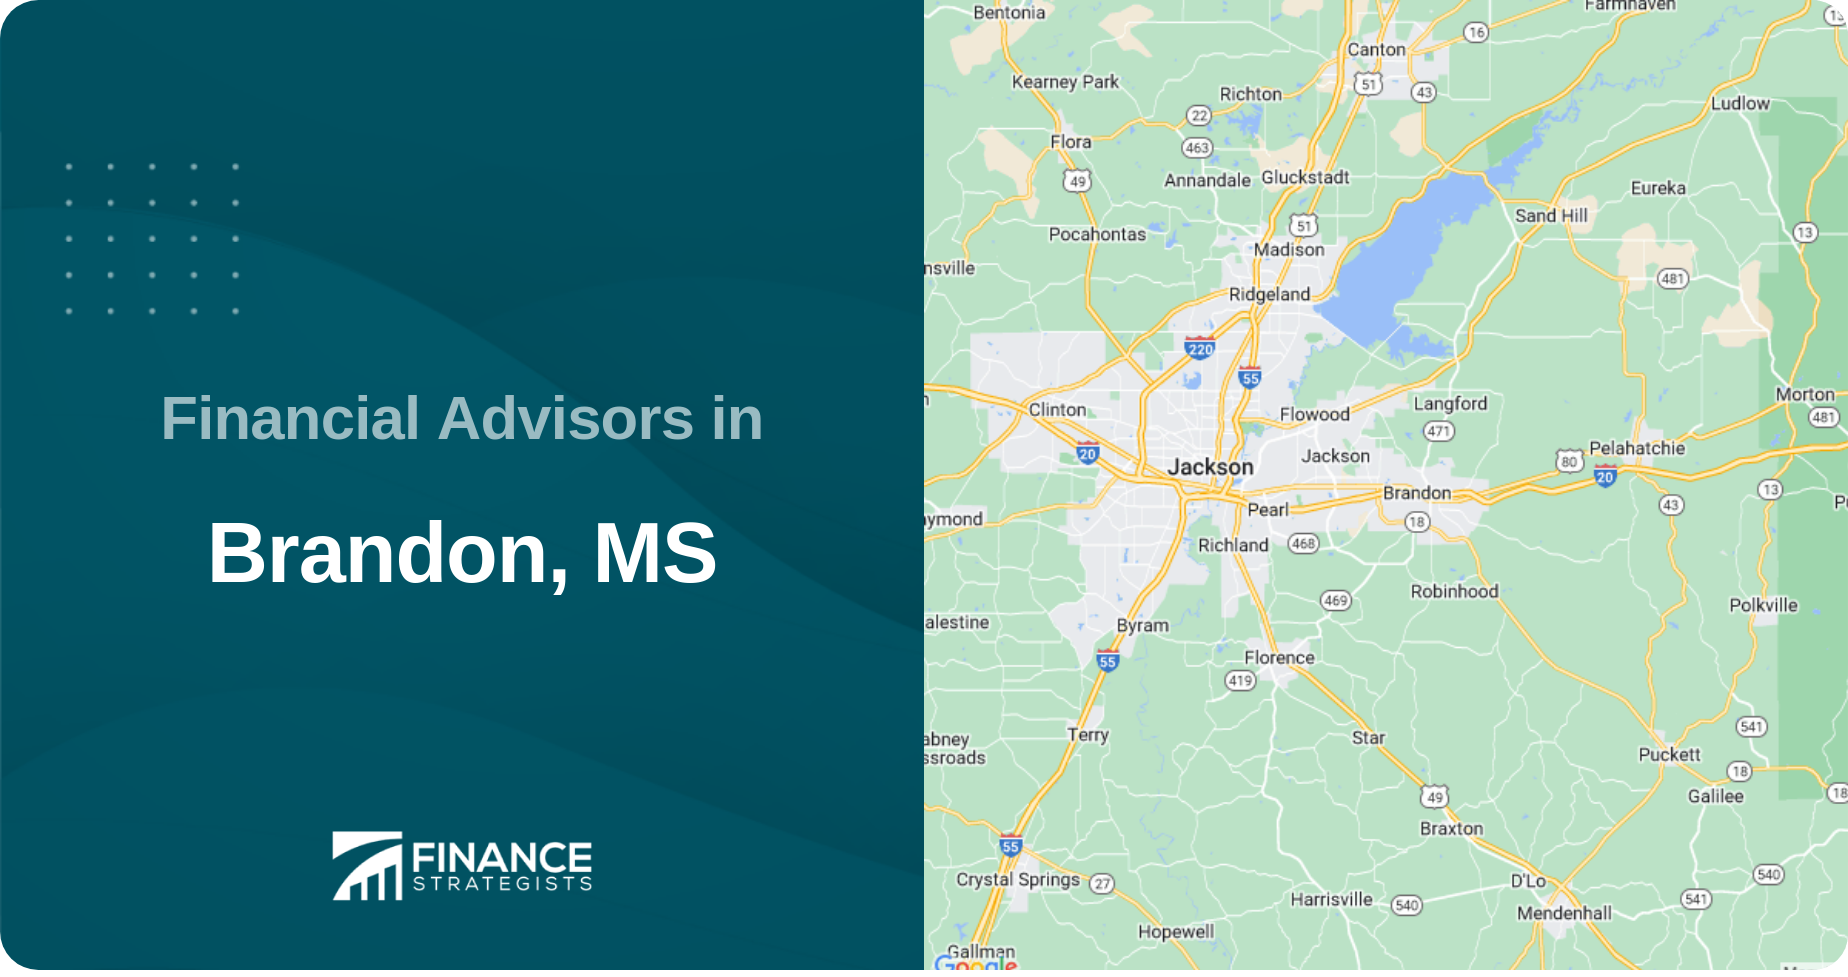 Financial Advisors in Brandon, MS